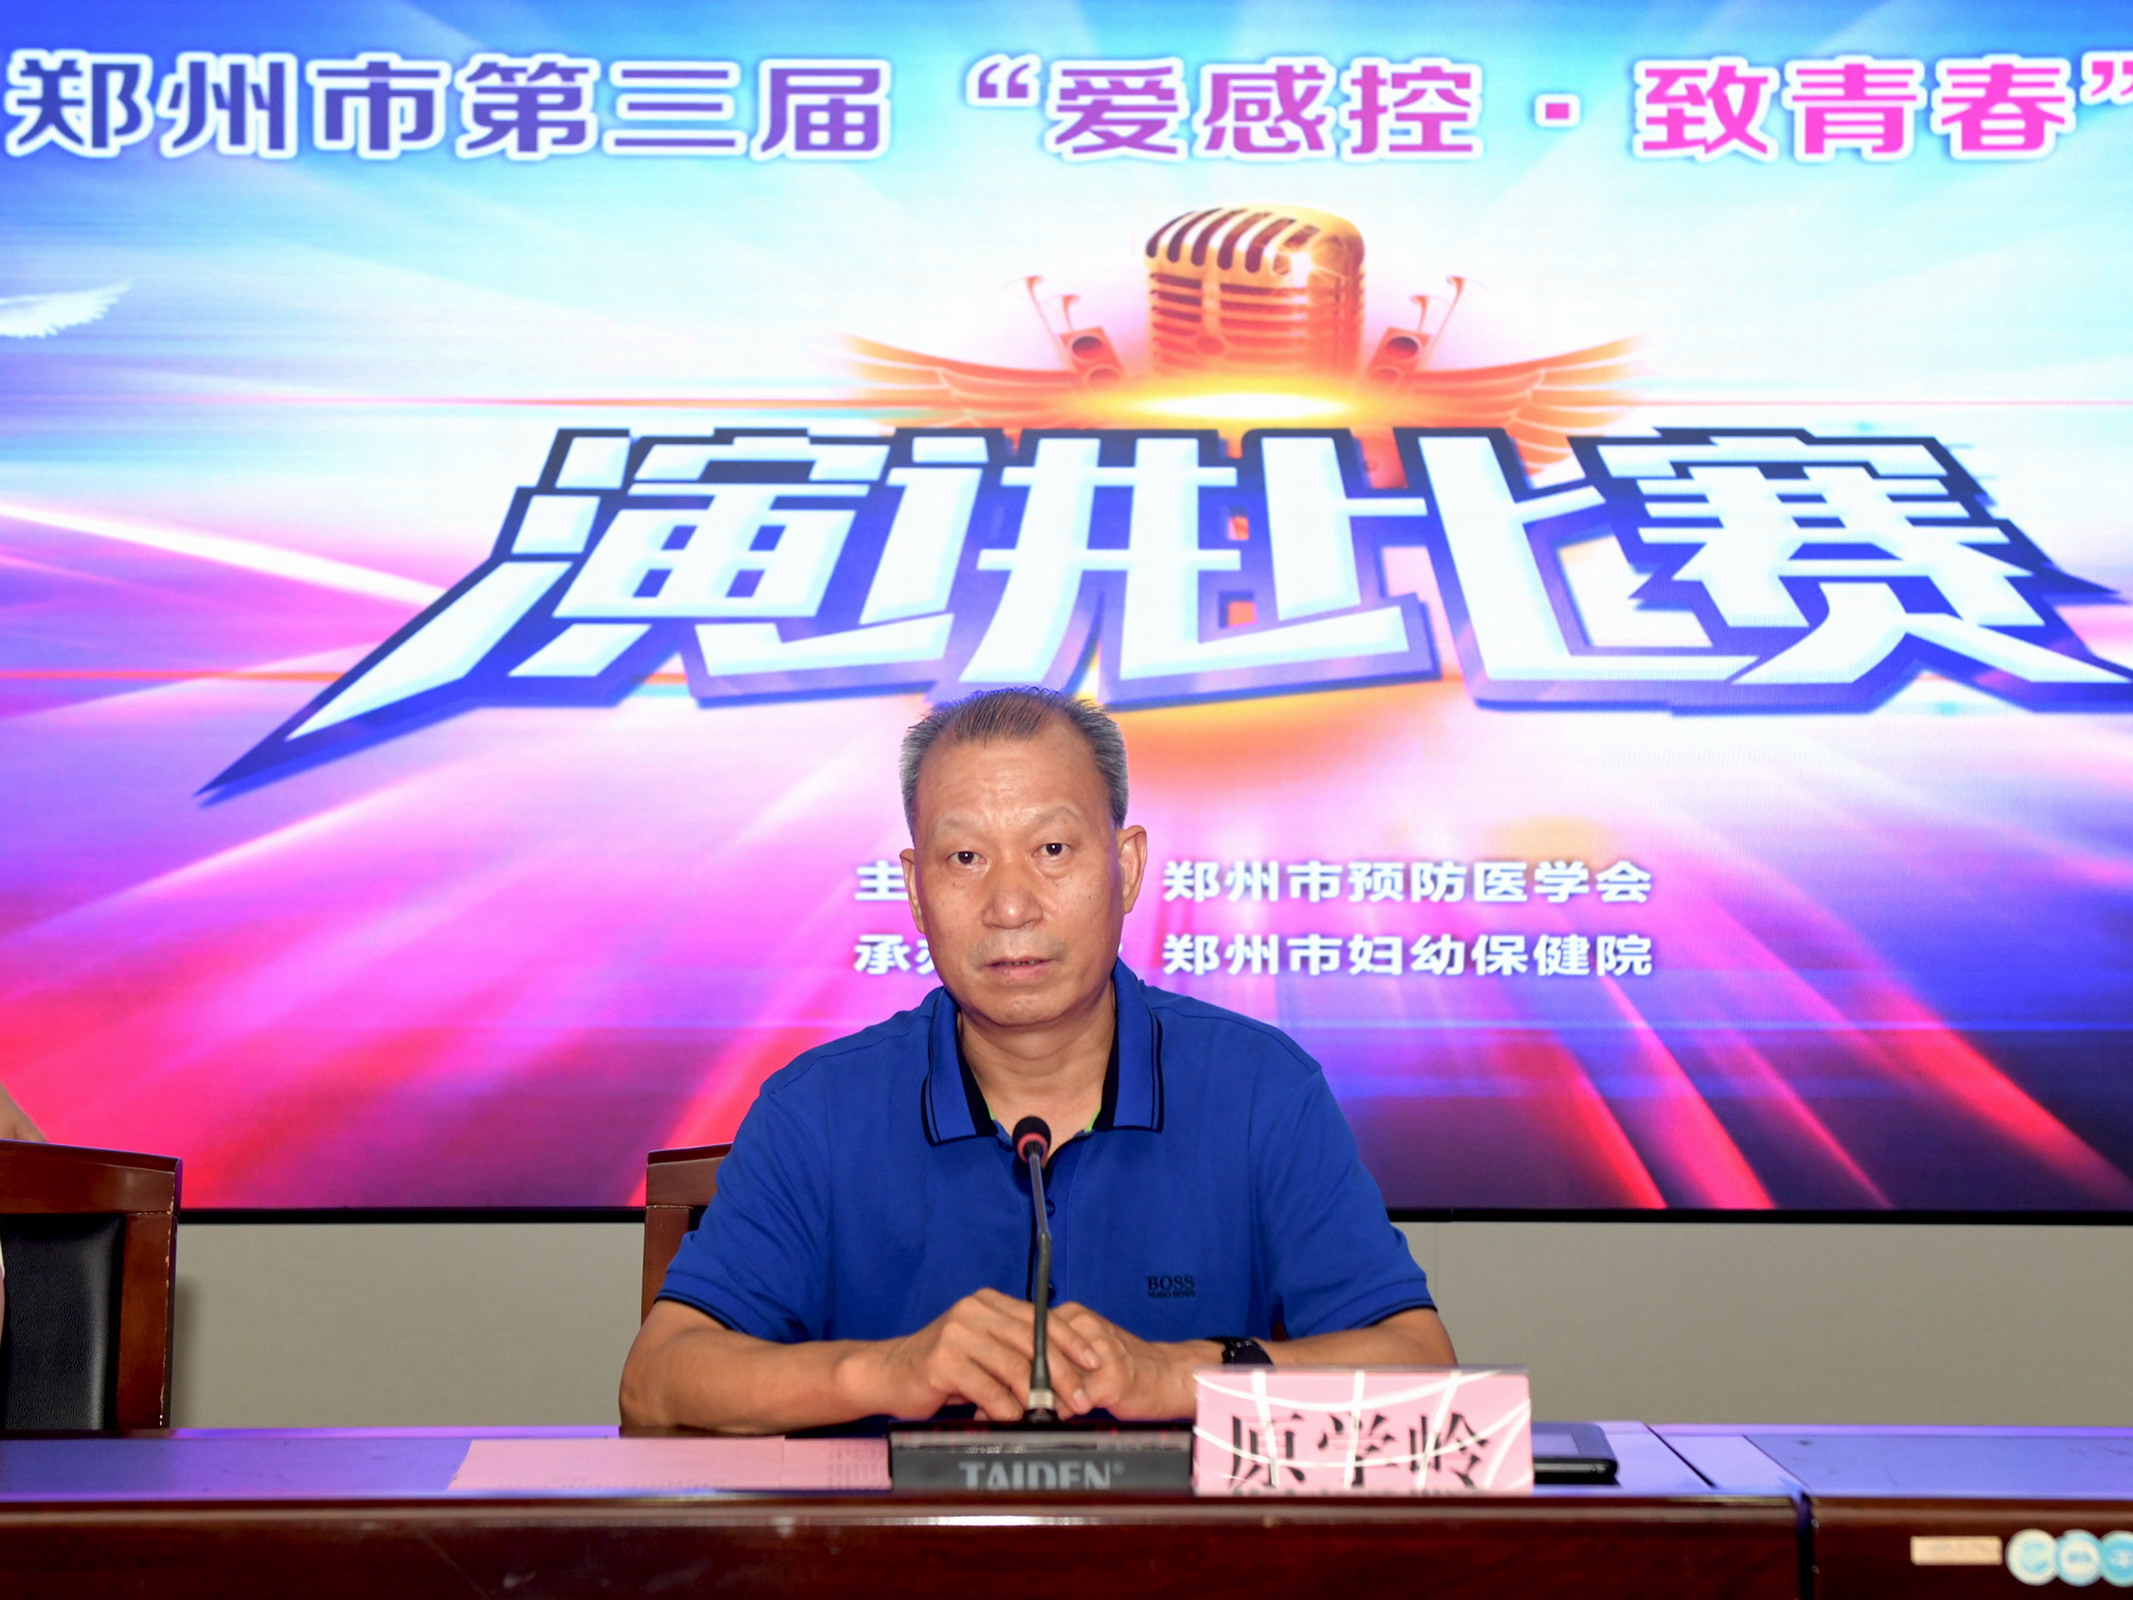 郑州市预防医学会第三届“爱感控·致青春”青年演讲比赛成功举办